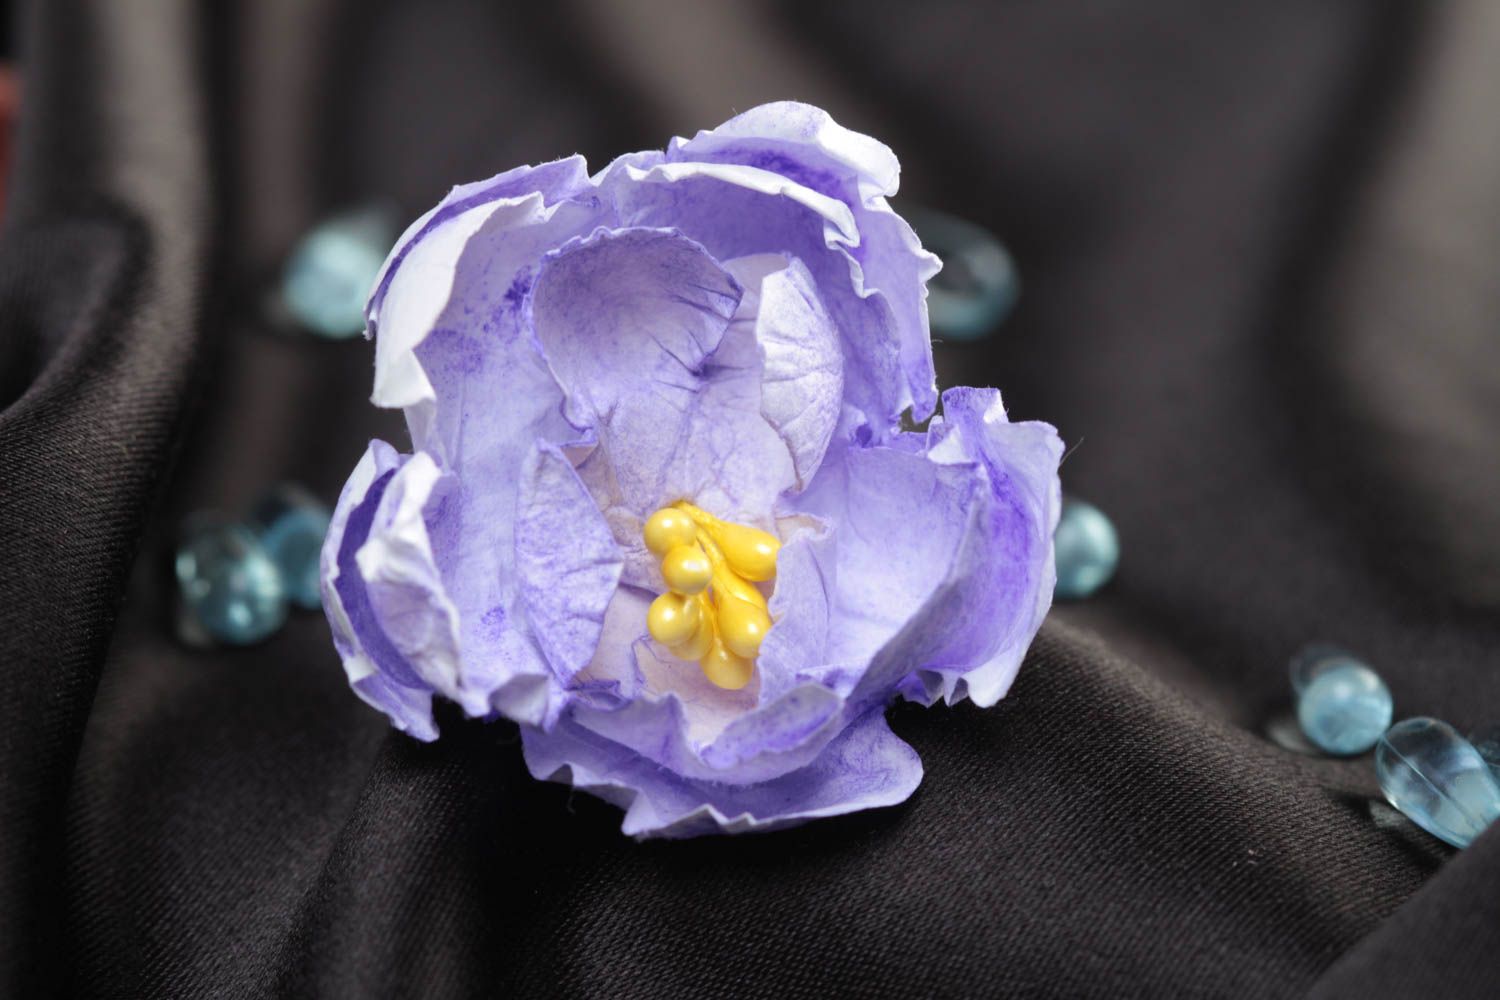 Сиреневый цветок из бумаги для создания изделий в технике скрапбукинг хэнд мэйд фото 1